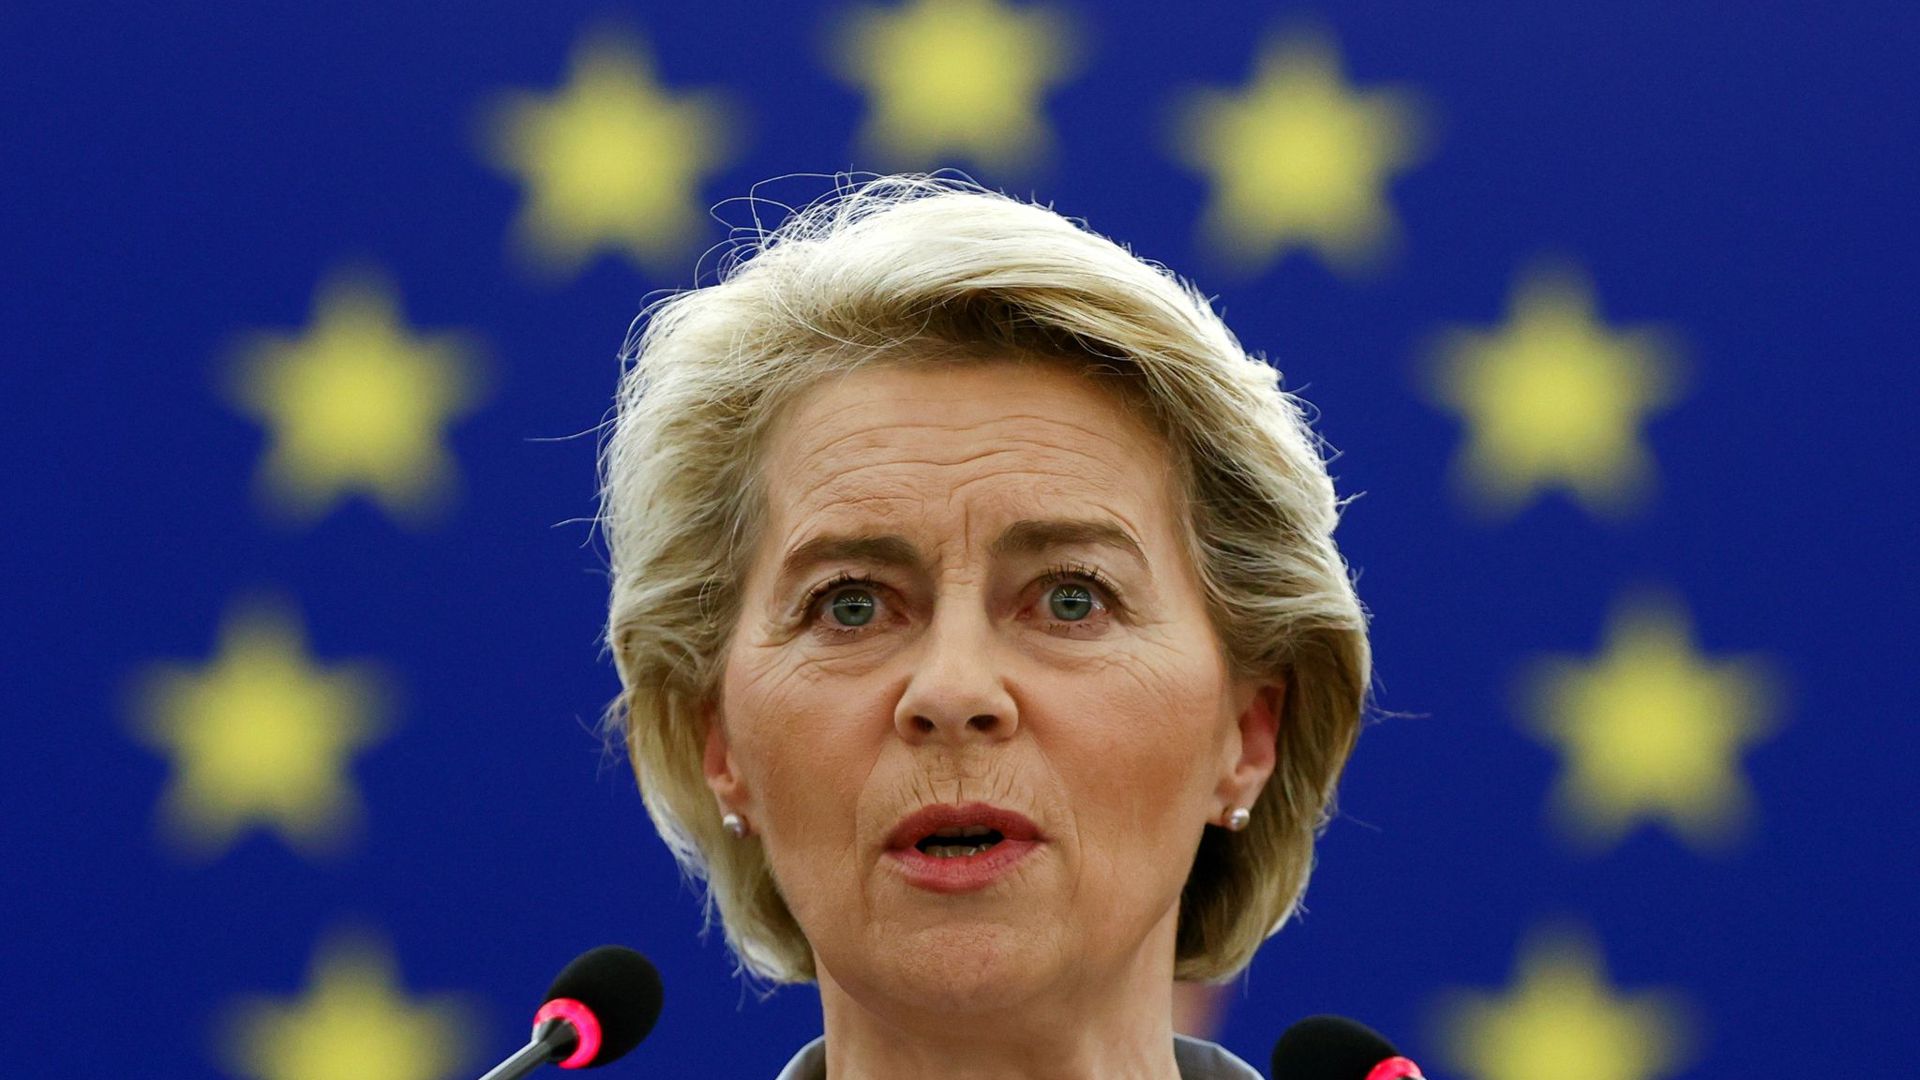 Ursula von der Leyen, Präsidentin der Europäischen Kommission, während einer Plenarsitzung im Europäischen Parlament.